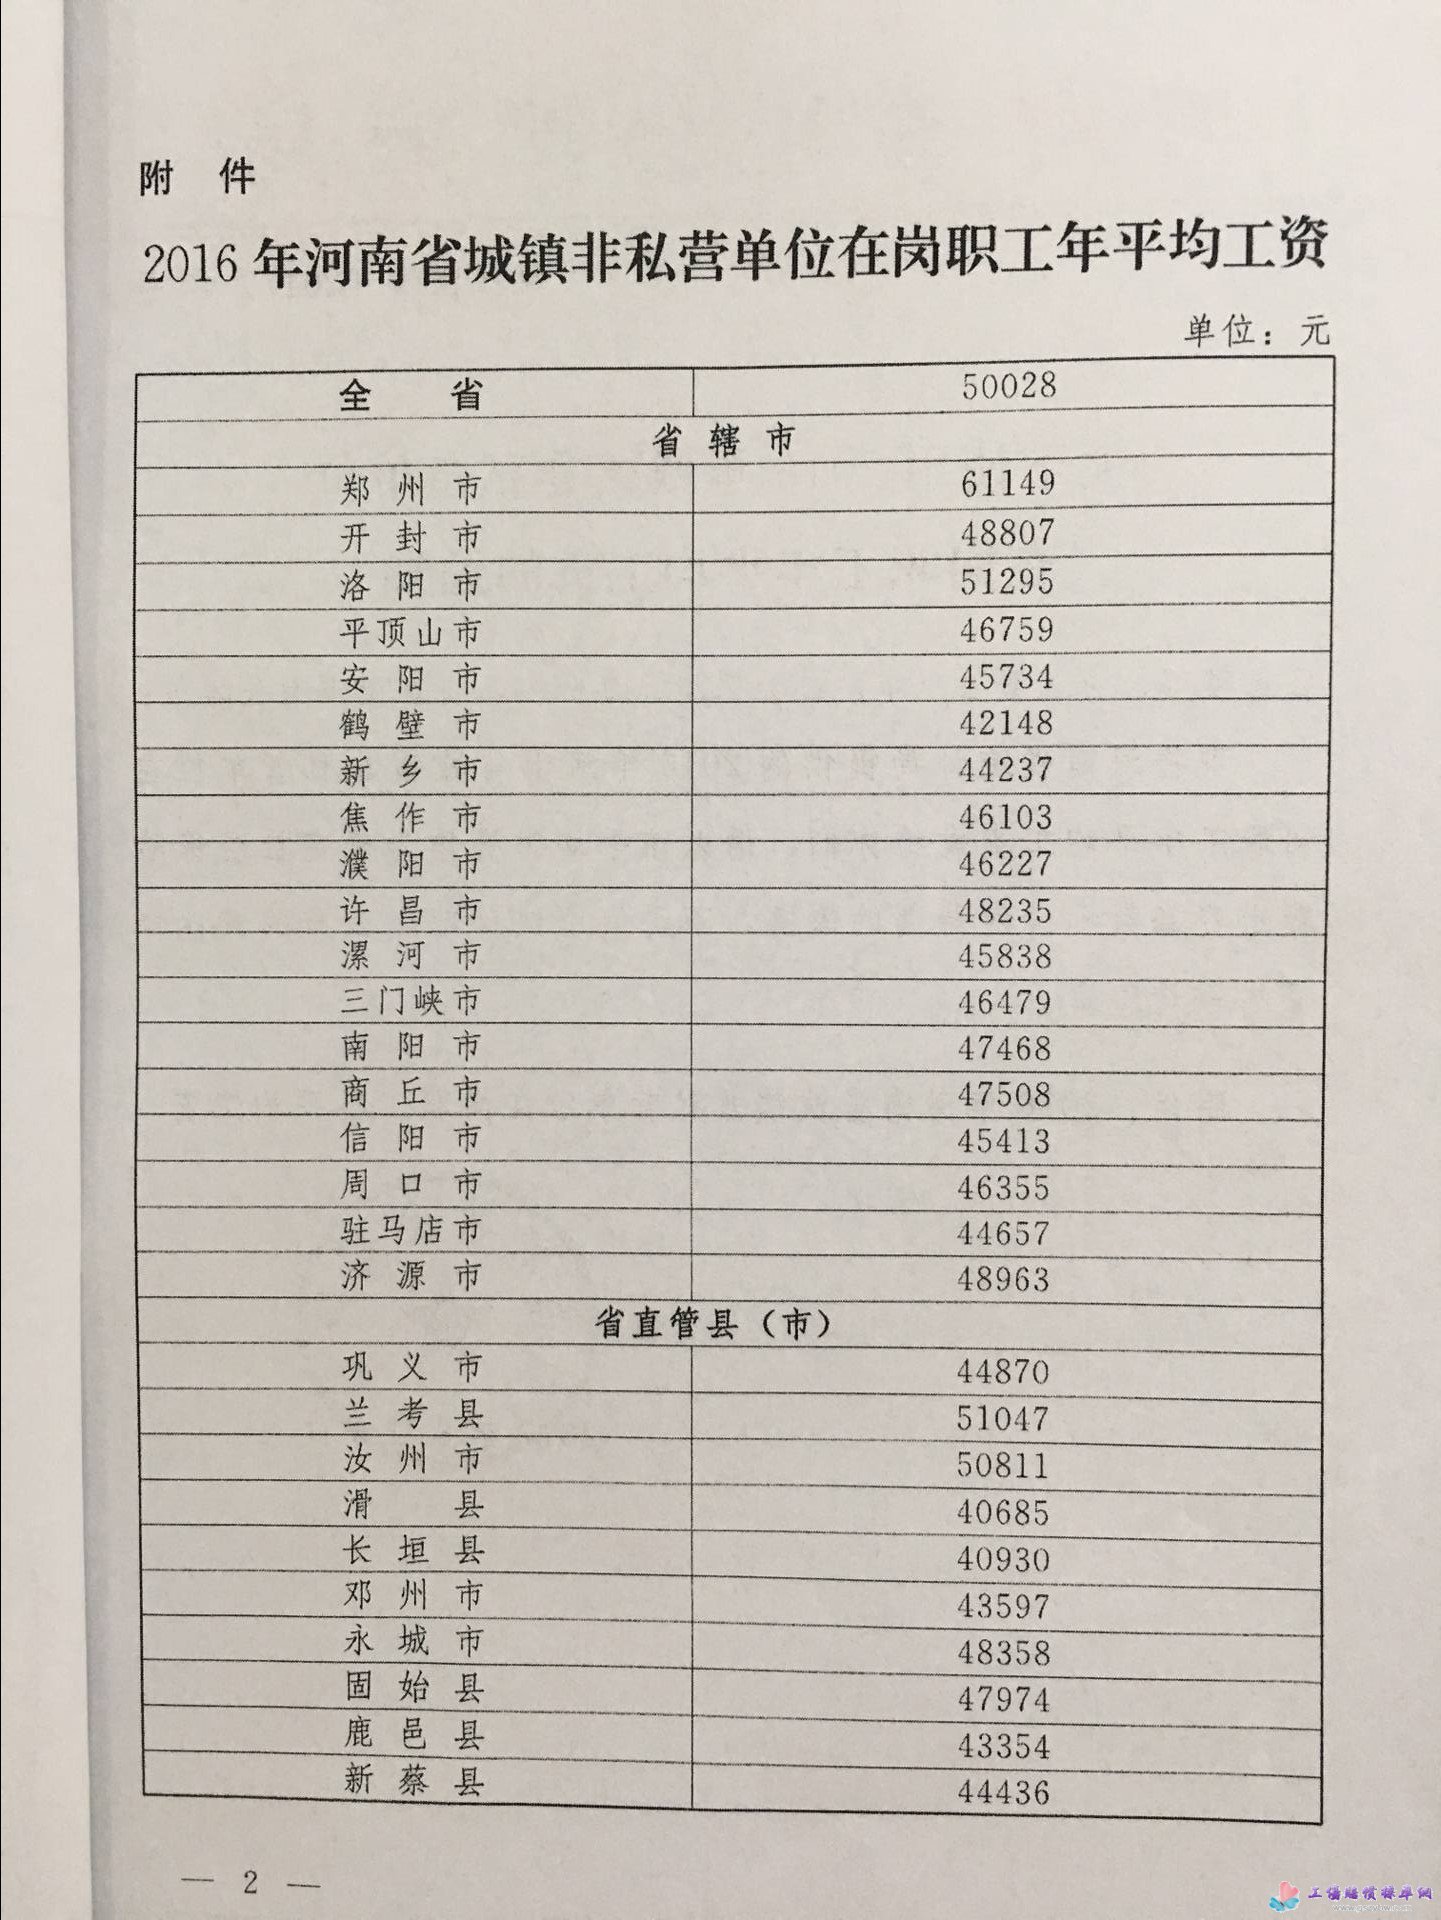 河南省人社局关于使用2016年城镇非私营单位在岗职工年平均工资的通知图2